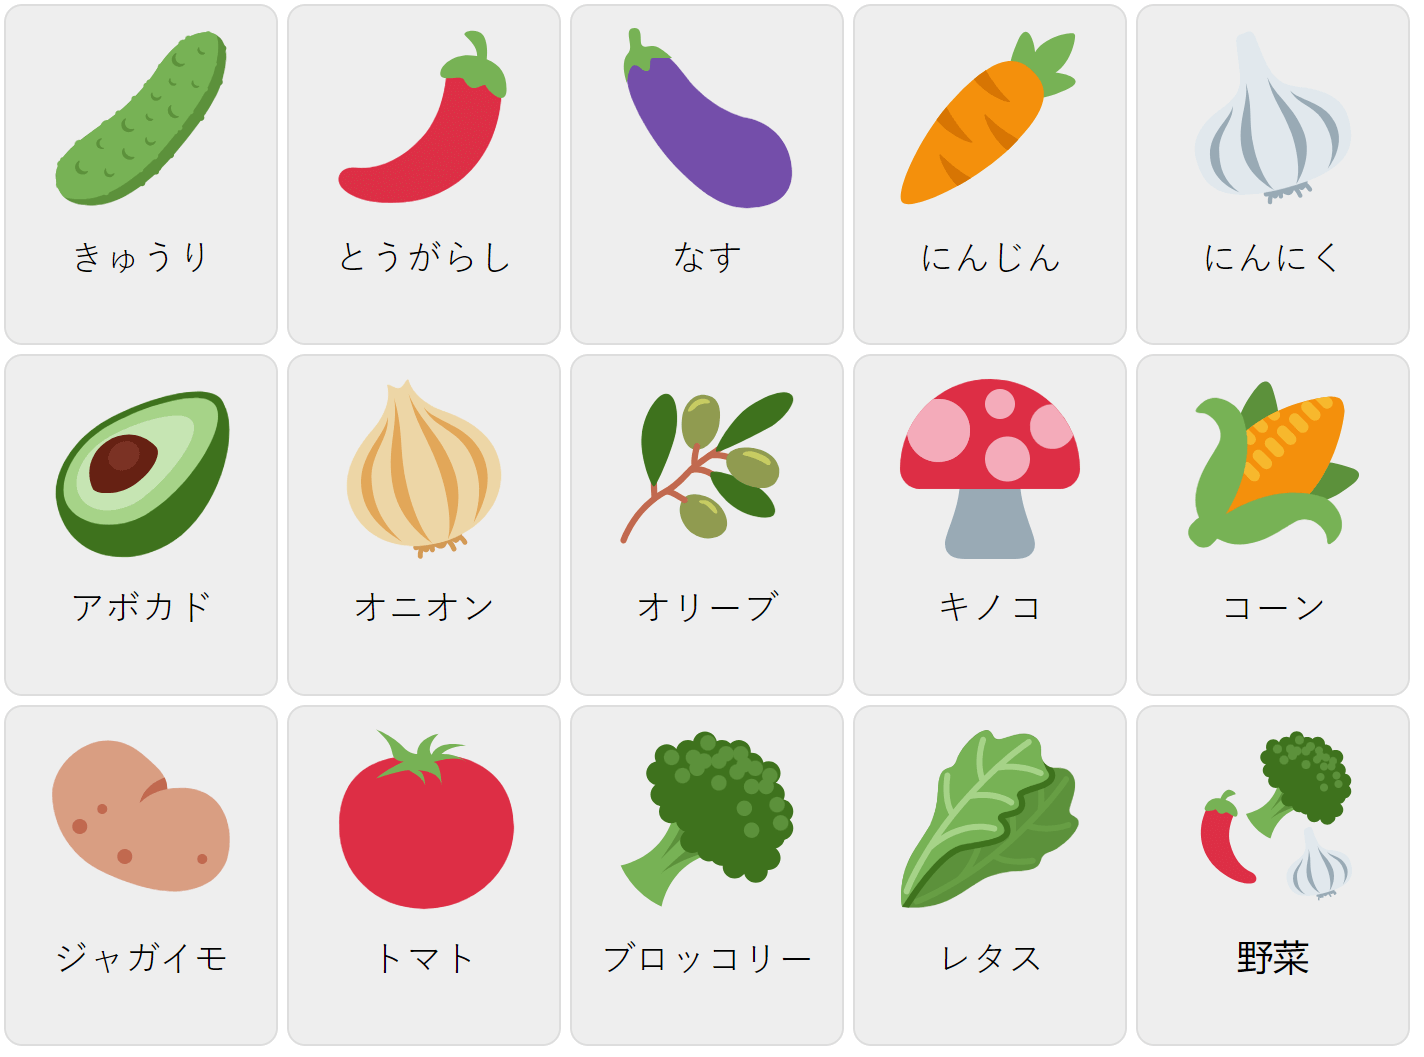 Gemüse auf Japanisch